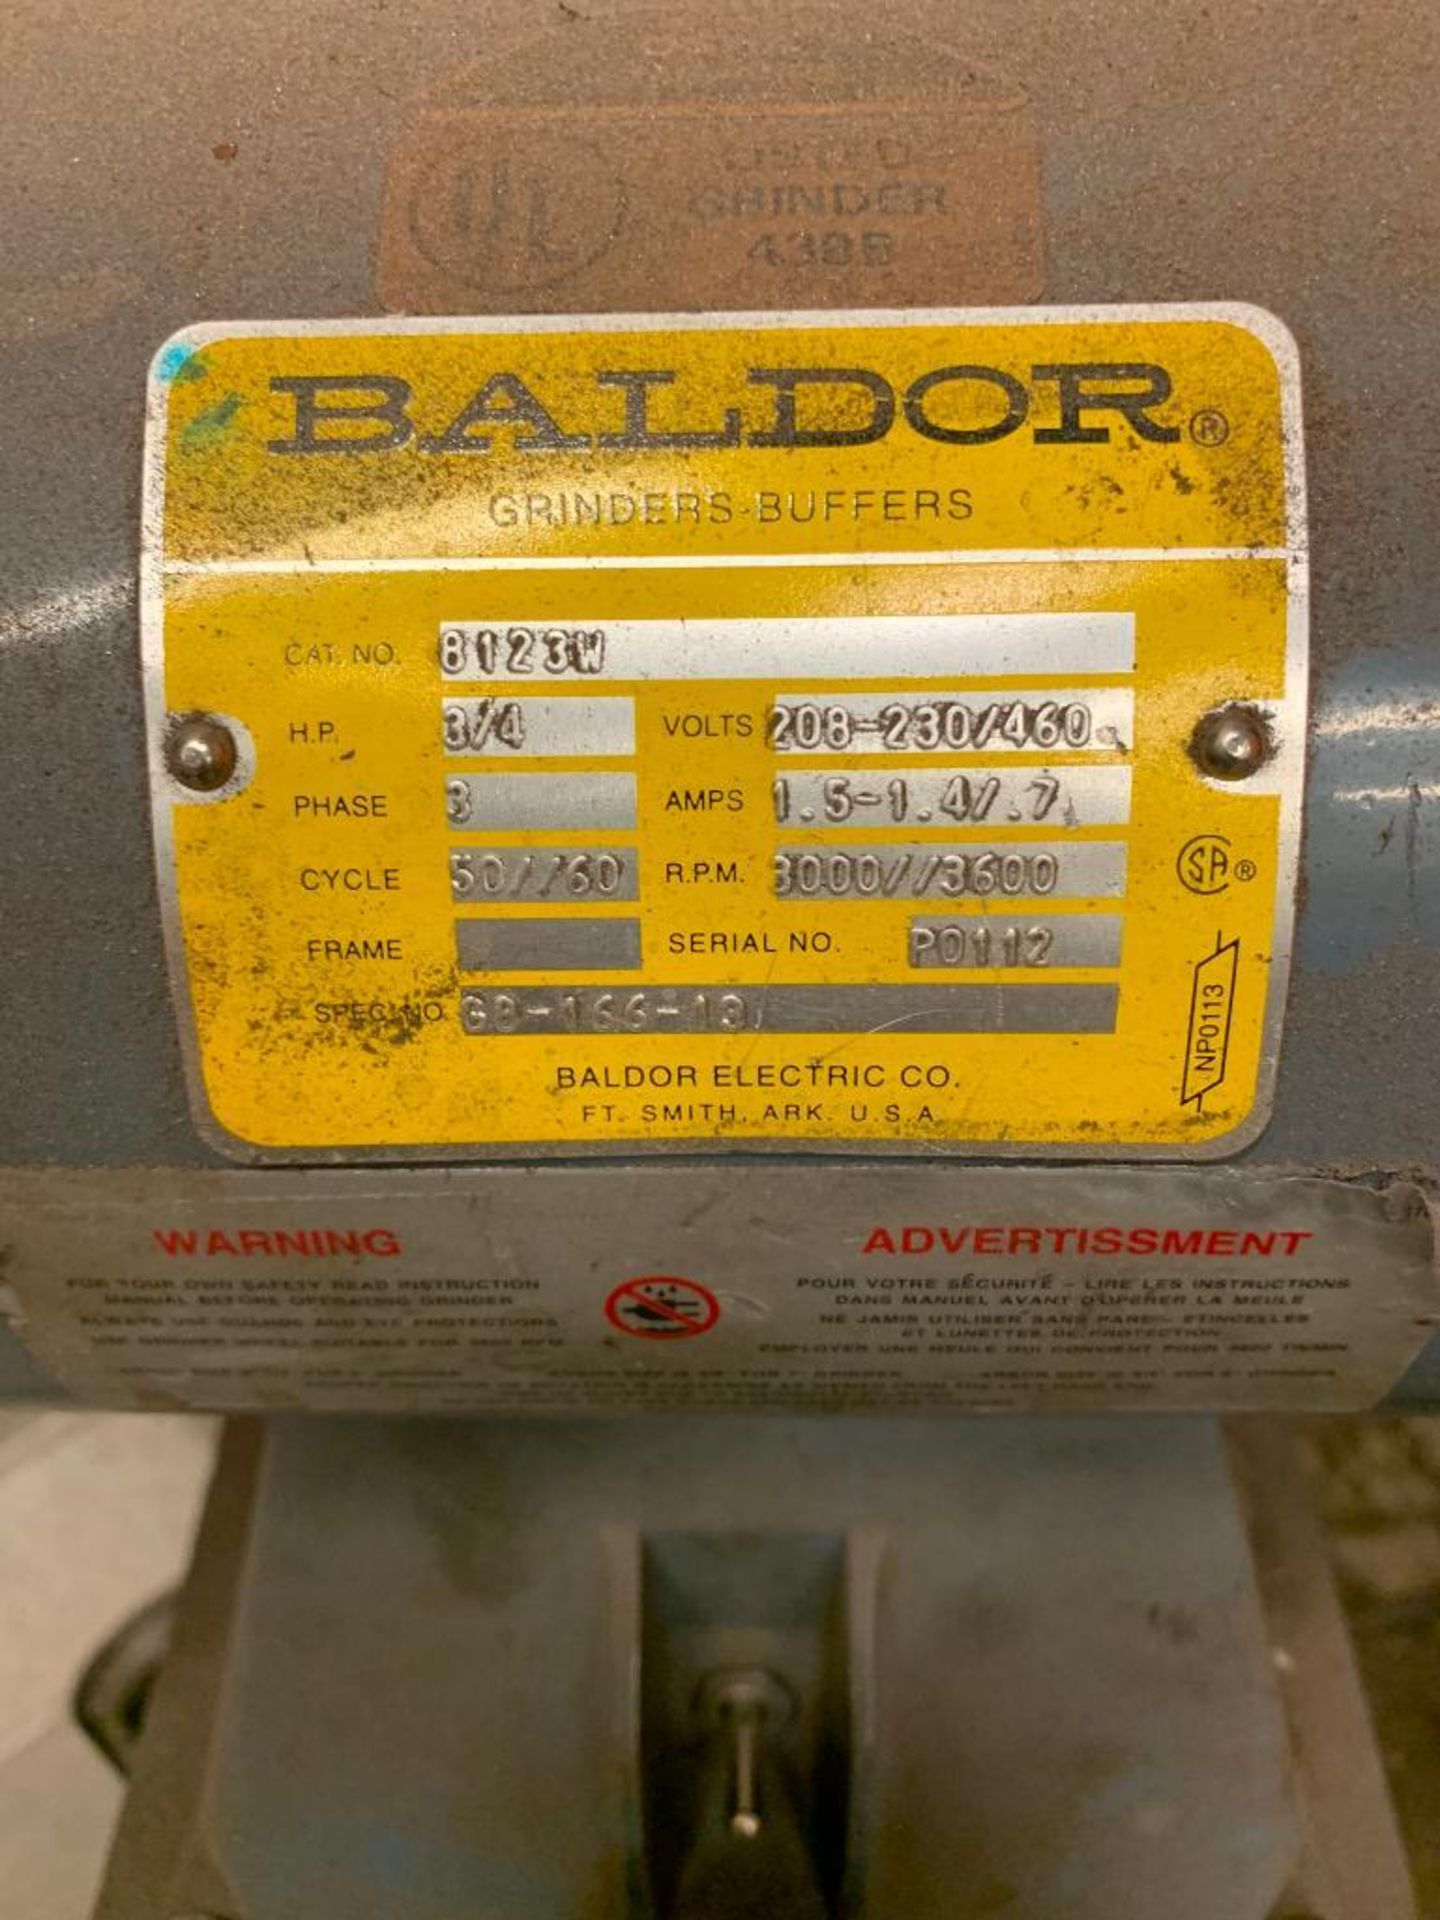 Baldor 6" Double-End Pedestal Grinder, 1/4-HP, 208-230/460 V, 3000/3600 RPM - Image 3 of 3